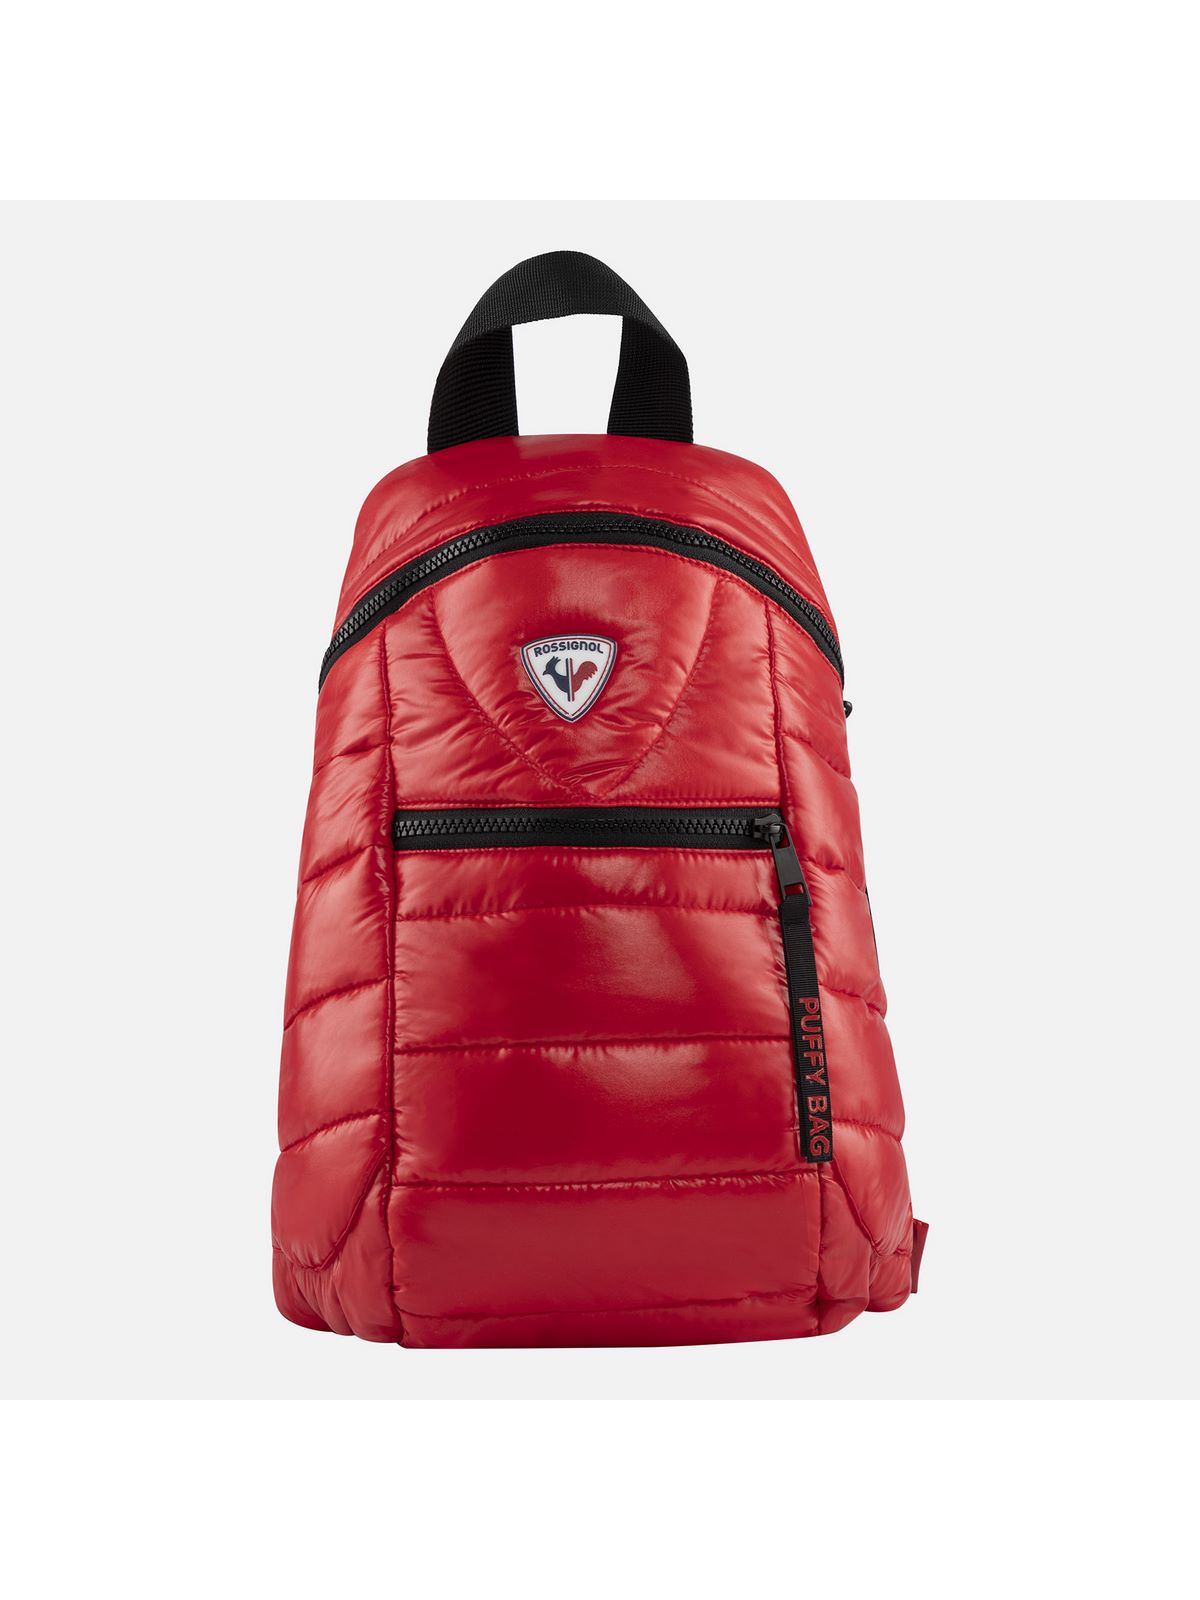 Plecak Rossignol Puffy Bag Red granatowy